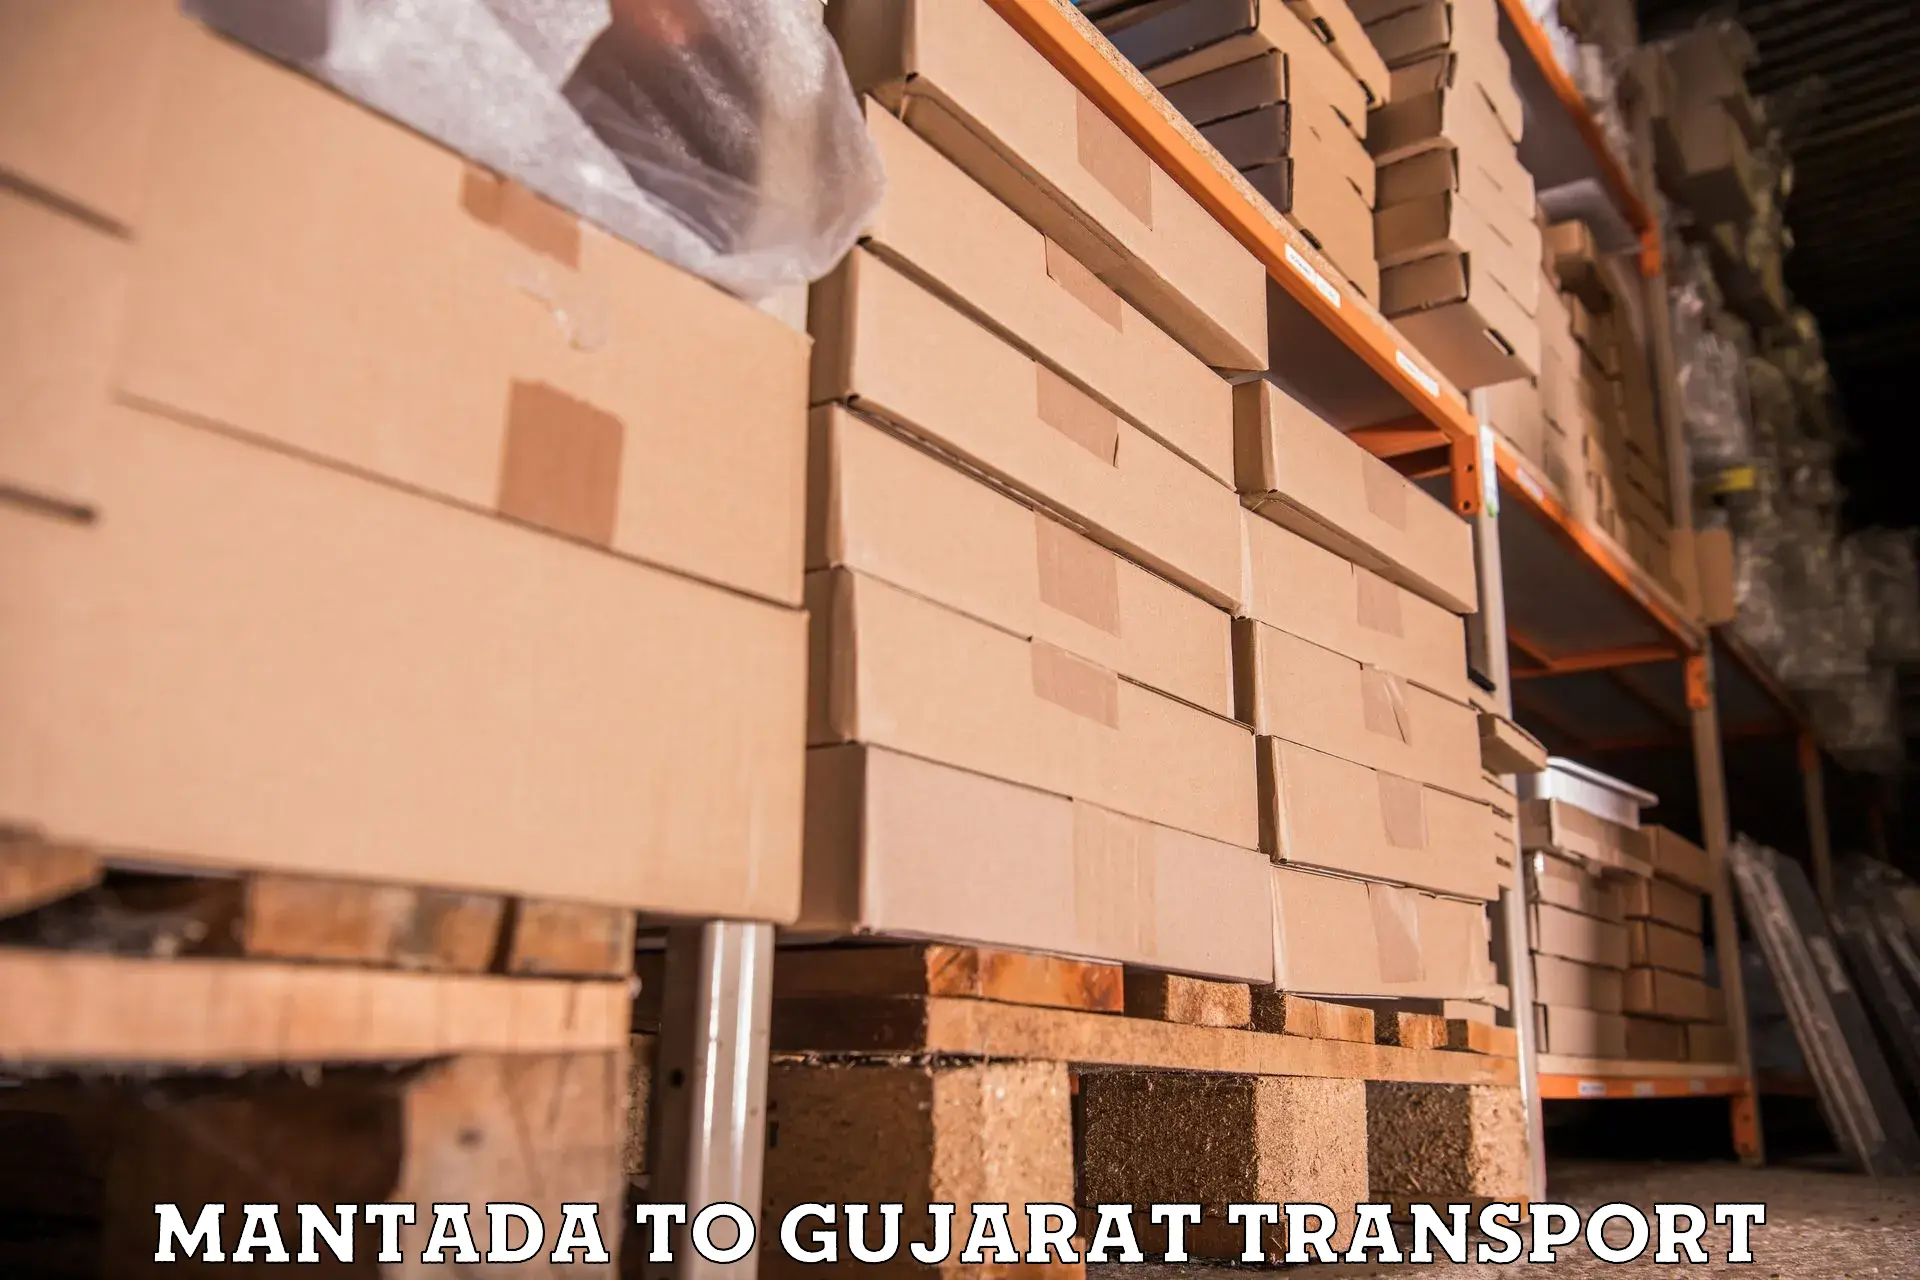 Container transport service Mantada to Dahegam